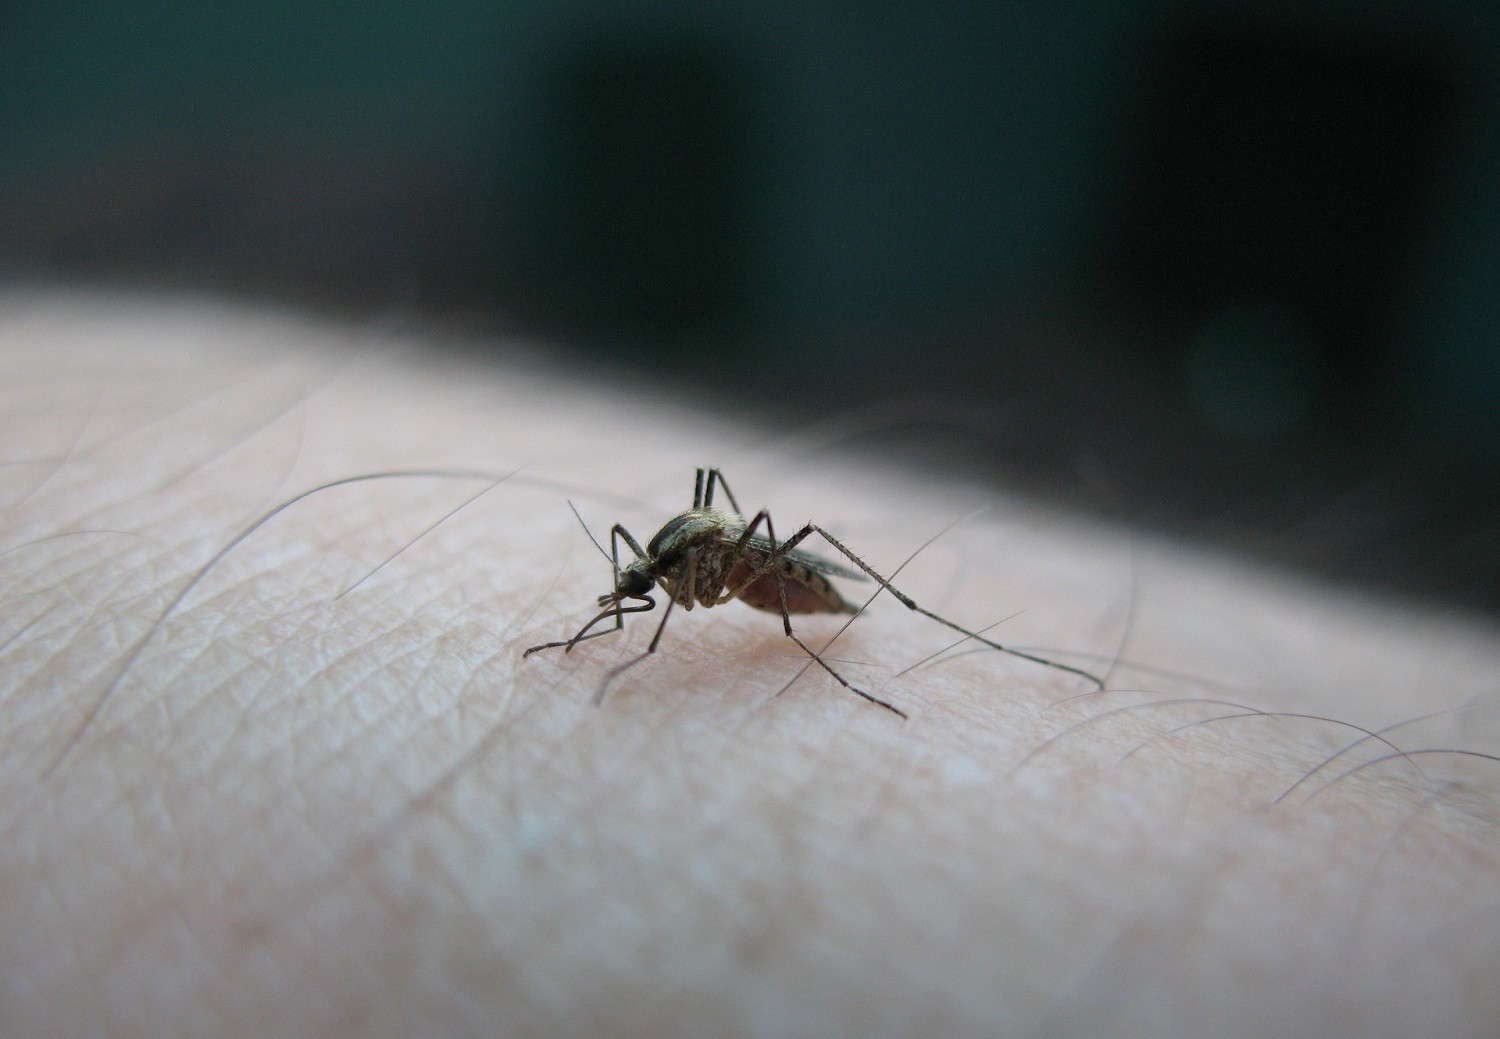 Ιός Δυτικού Νείλου: Προειδοποίηση για ψεκασμούς κατά των κουνουπιών